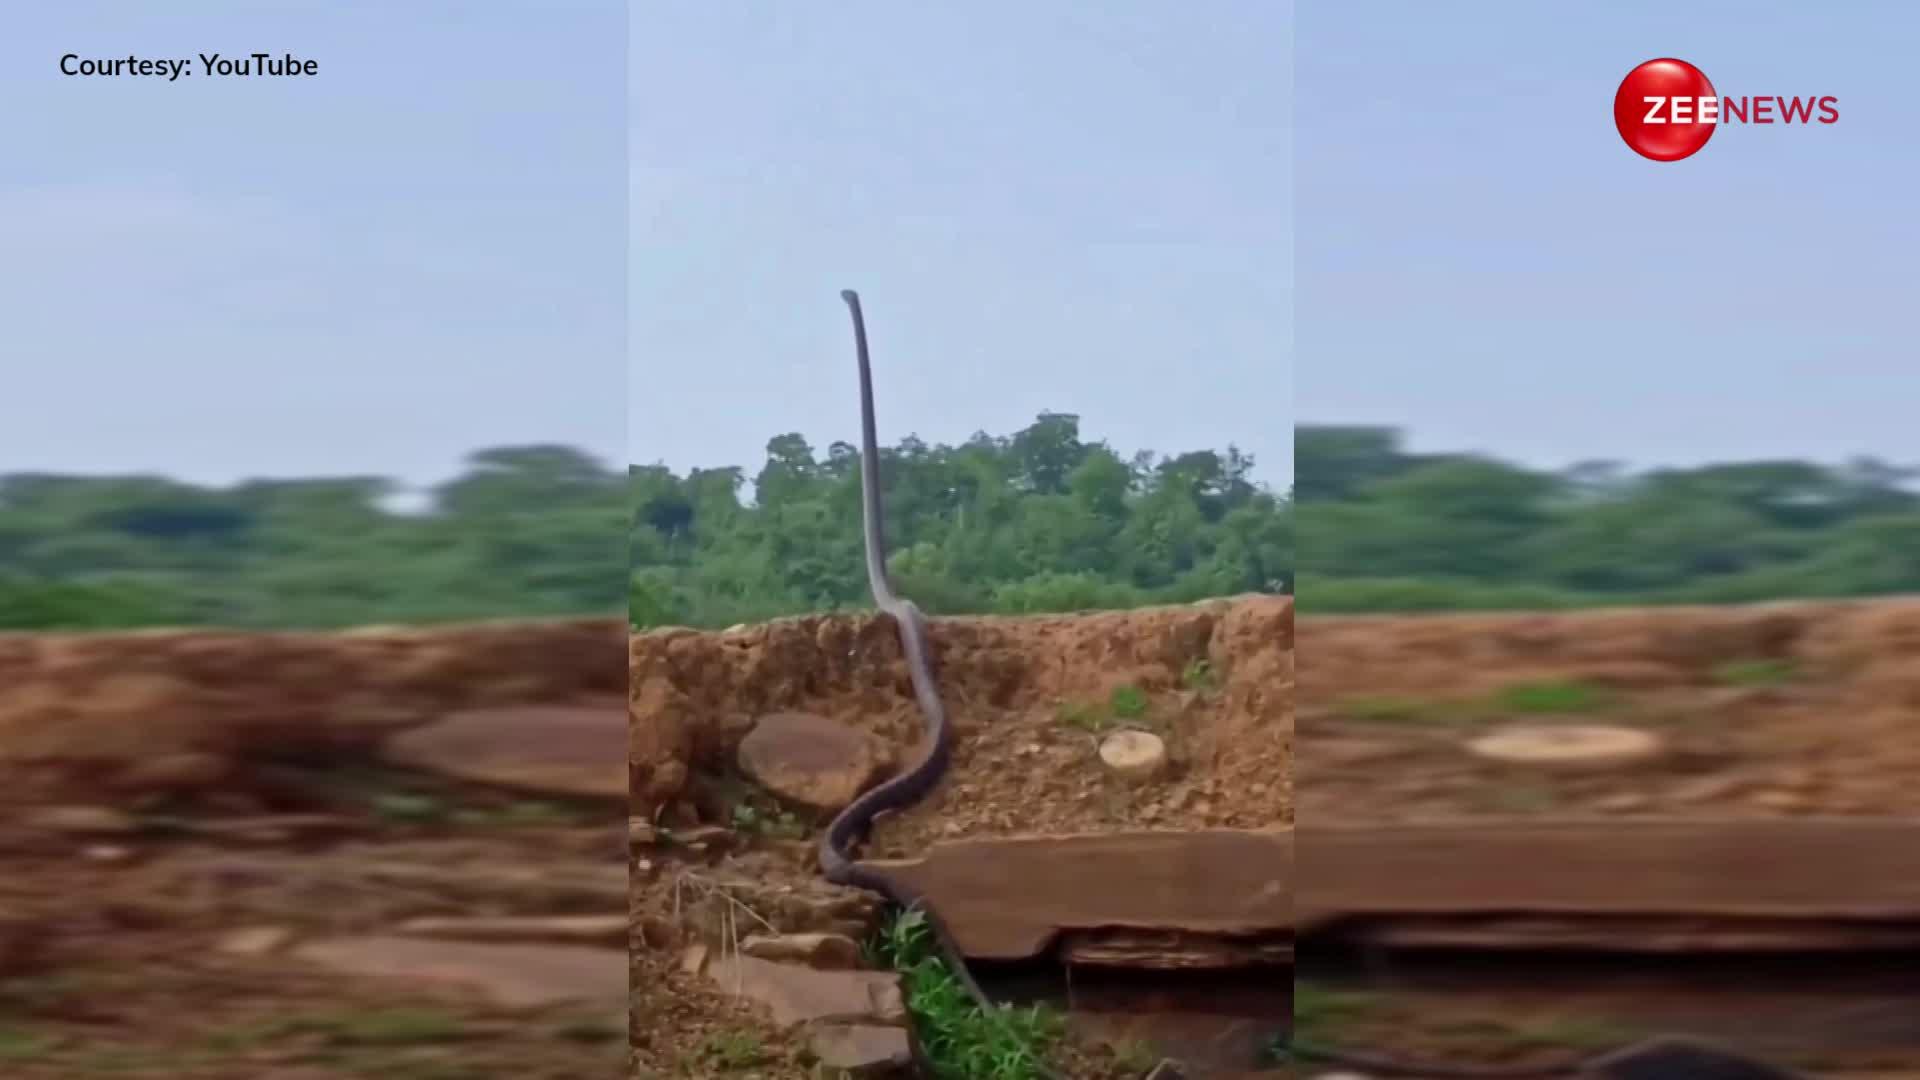 नागिन के इंतजार में सूख गया नाग, हवा में पूरा खड़ा होकर 15 फुट के किंग कोबरा ने किया इंतजार